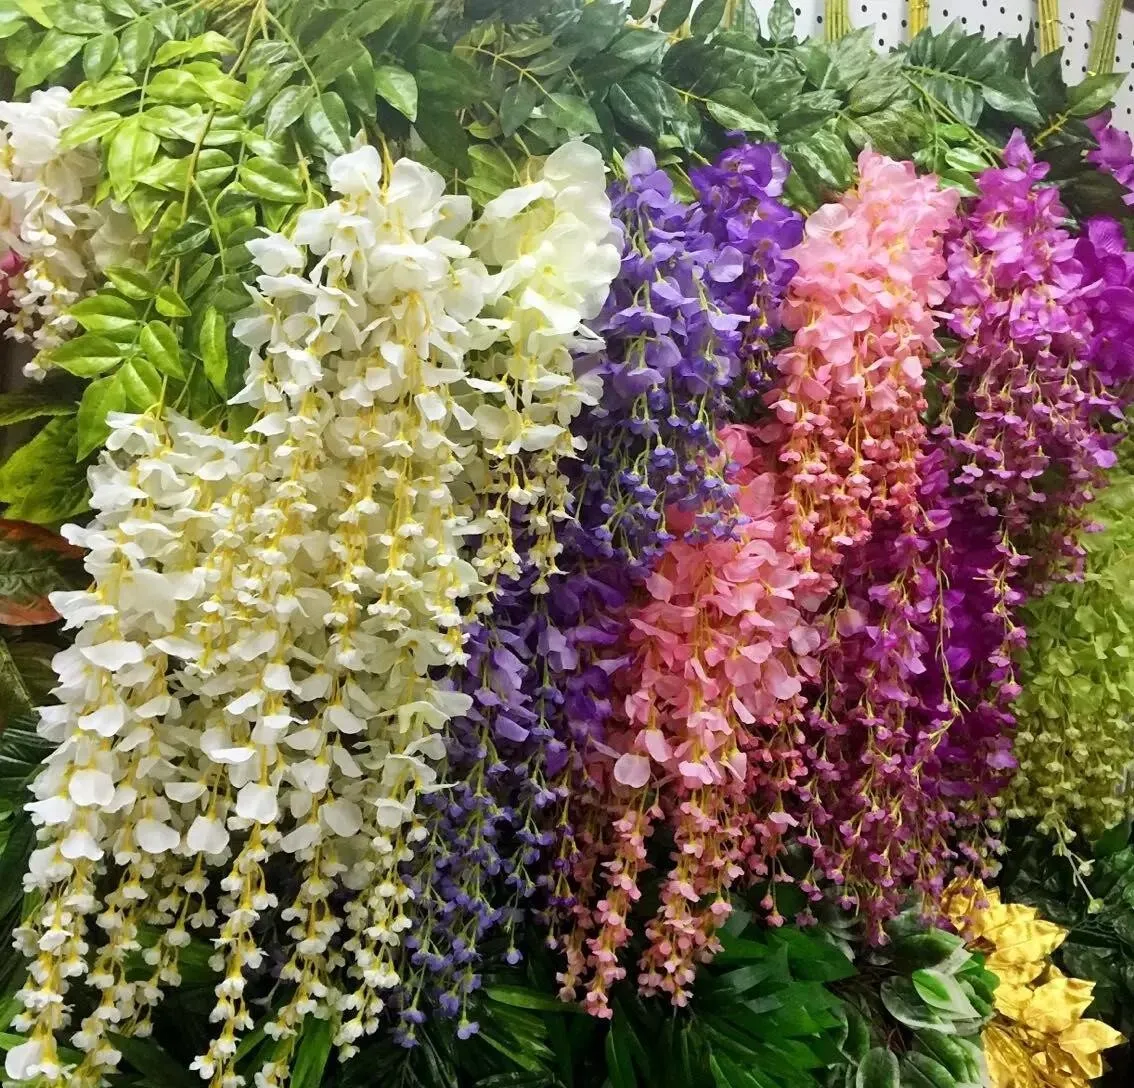 2017 새로운 위 테리아 웨딩 장식 110cm 6 색상 긴 인공 장식 꽃 Garlands 파티 웨딩 홈 DHL 무료 배송